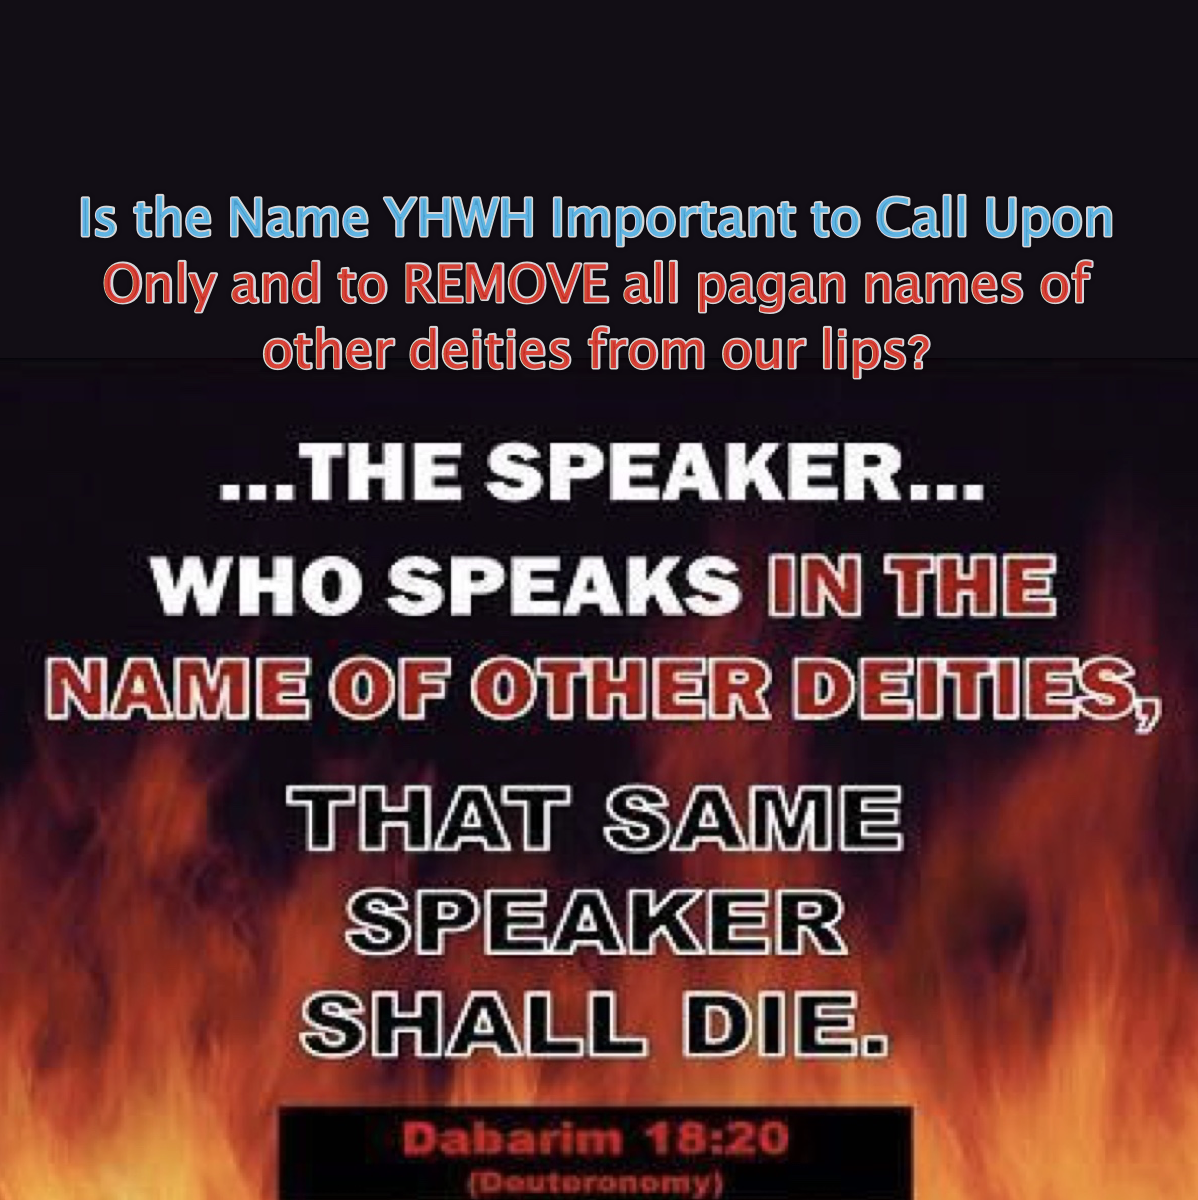 YHWH important speaker